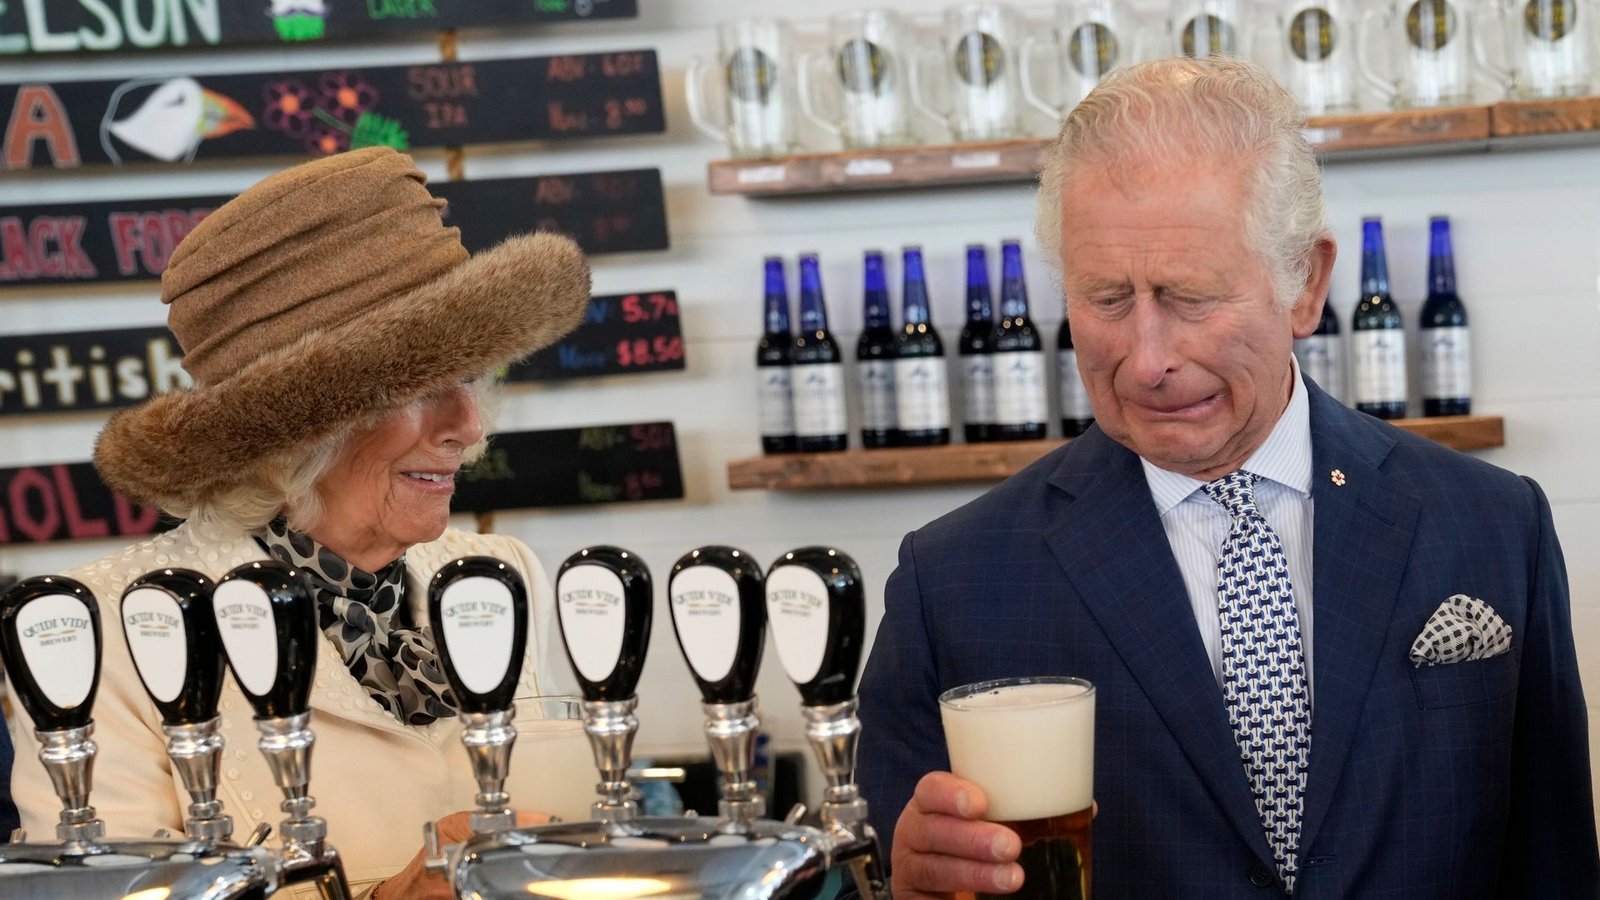 Prinz Charles und Camilla, Herzogin von Cornwall, besuchen die Quidi Vidi Brauerei in einem Fischerdorf auf Neufundland. Die beiden sind anlässlich des Platinjubiläums der Königin für drei Tage in Kanada zu Besuch.Foto: Paul Chiasson/The Canadian Press/AP/dpa